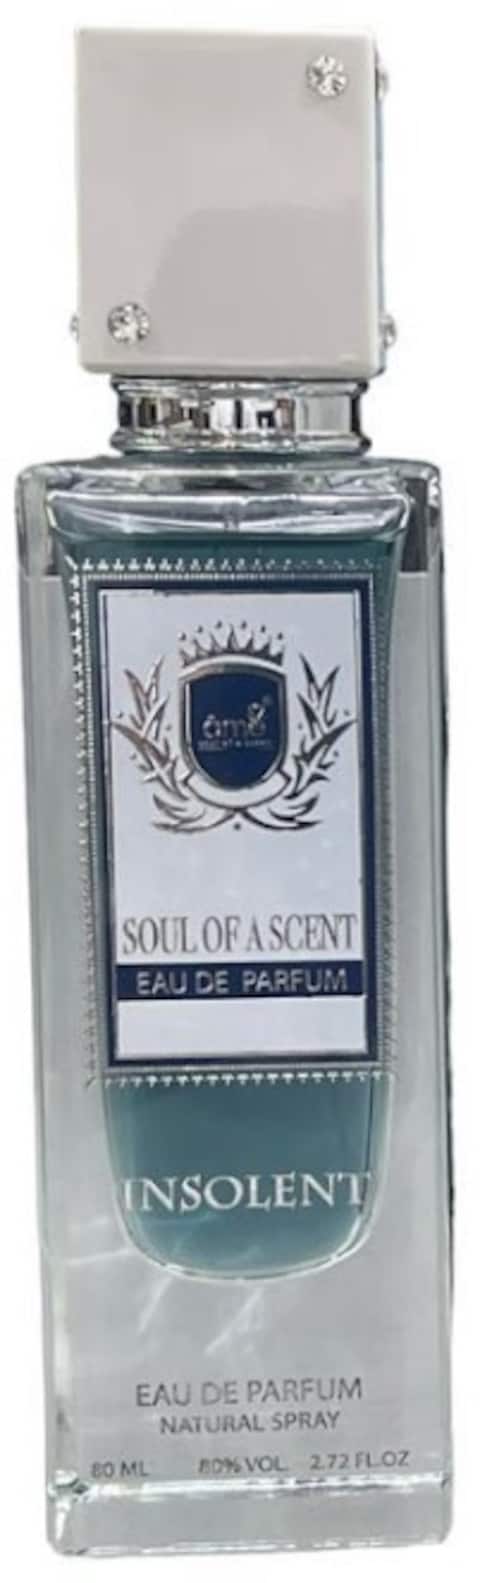 Ame Insolent Soul Of A Scent Insolent Eau De Parfum, 100ml